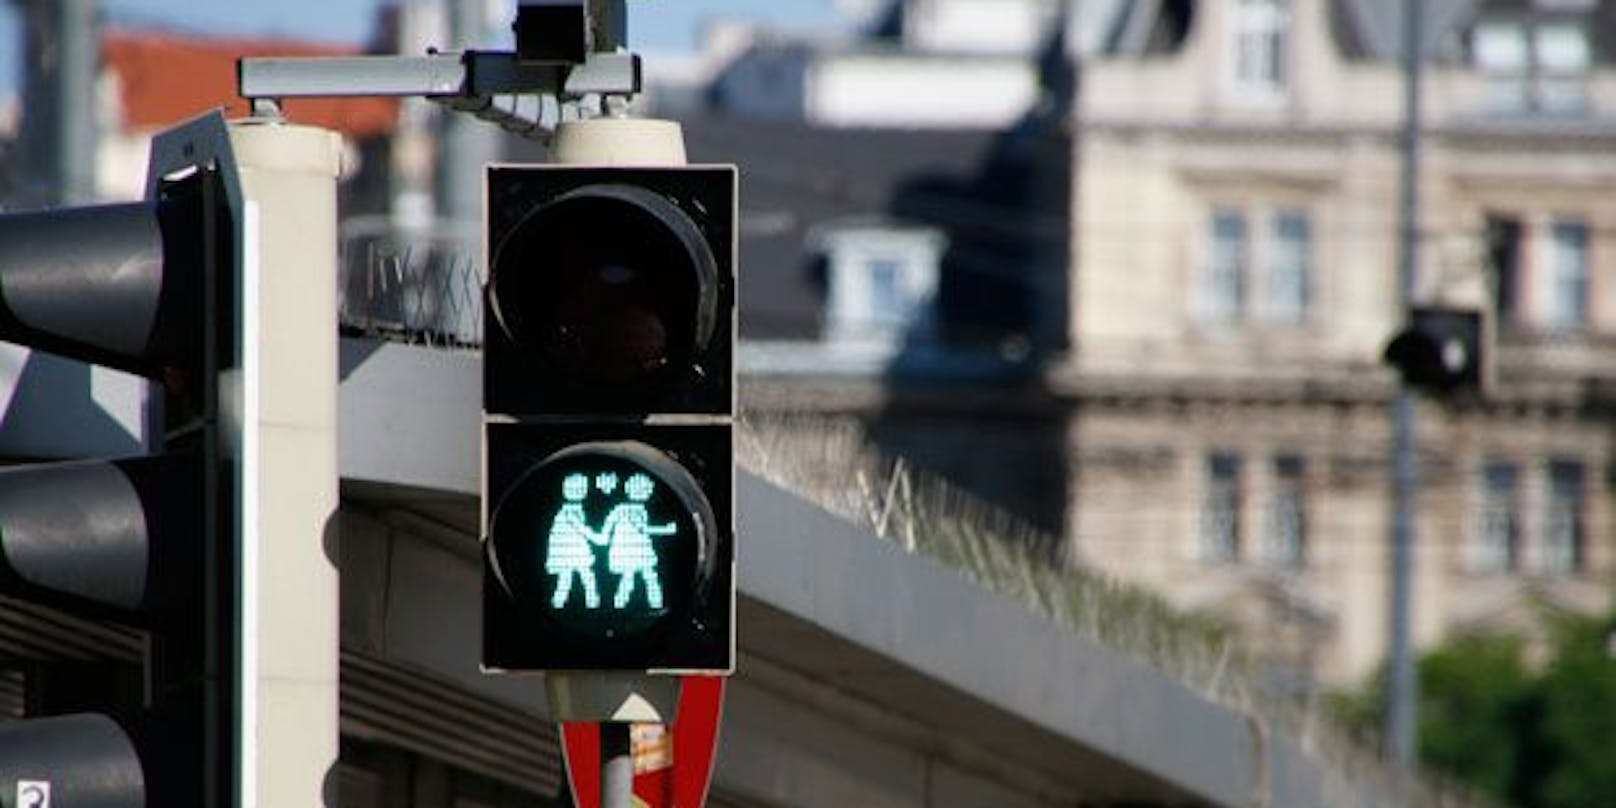 Kontaktbeschränkungen sind gefallen, die Zahlen steigen, trotzdem ist Wien wieder grün